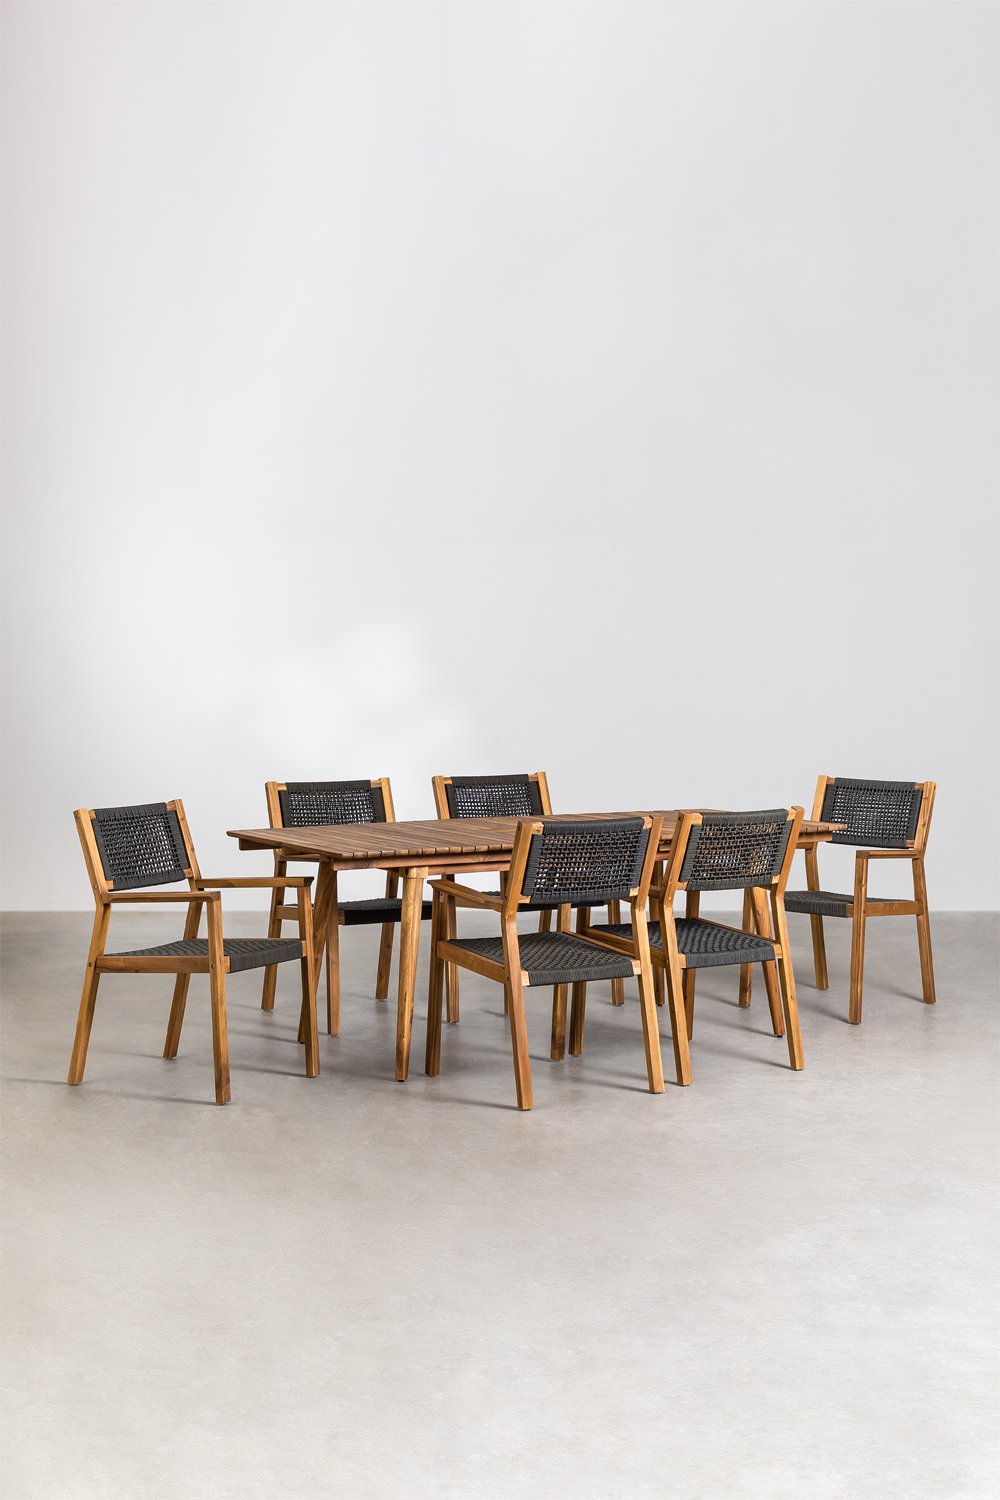 Set de Table extensible (160-210x90 cm) et 6 chaises de salle à manger Tenay, image de la galerie 1